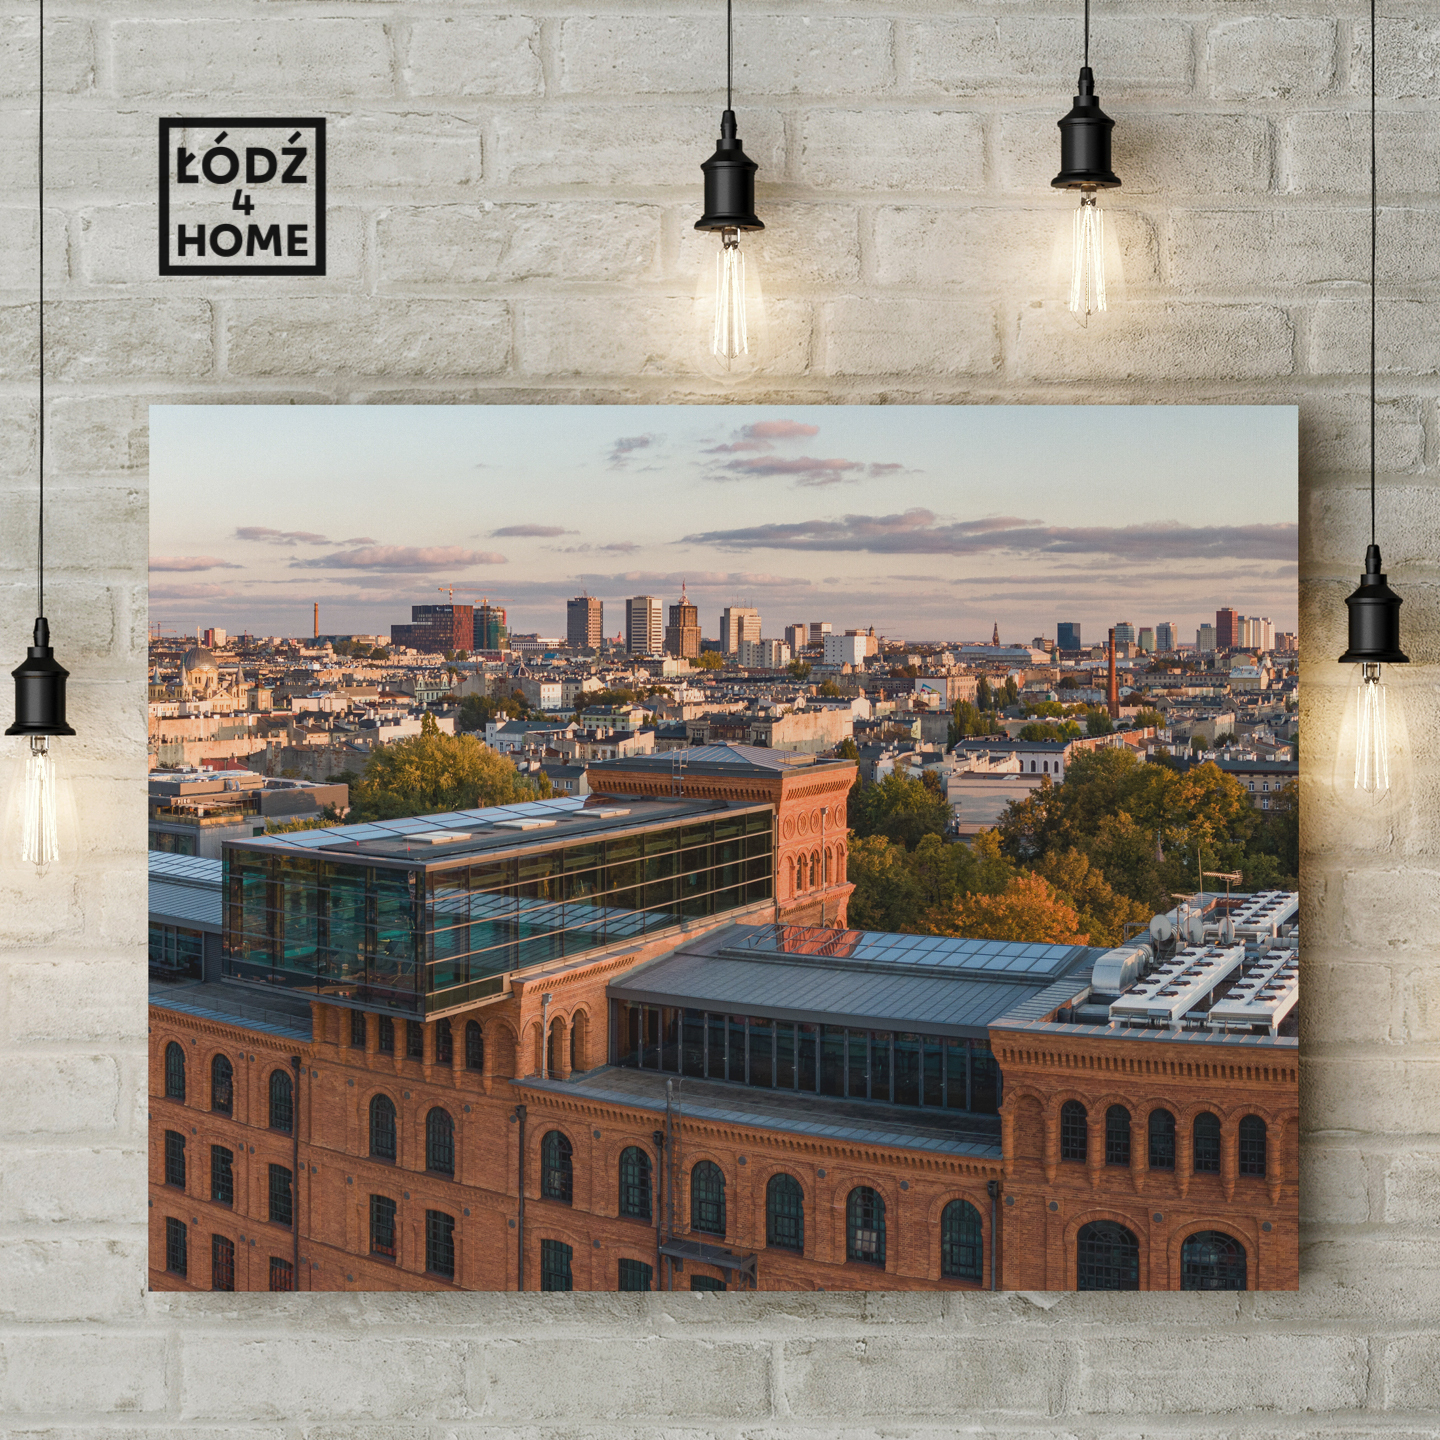 Sklep Łódź4Home prezentuje zdjęcie Łodzi, które przedstawia panoramę Łodzi widoczną znad Manufaktury z widocznym na pierwszym planie hotelem Andel's.